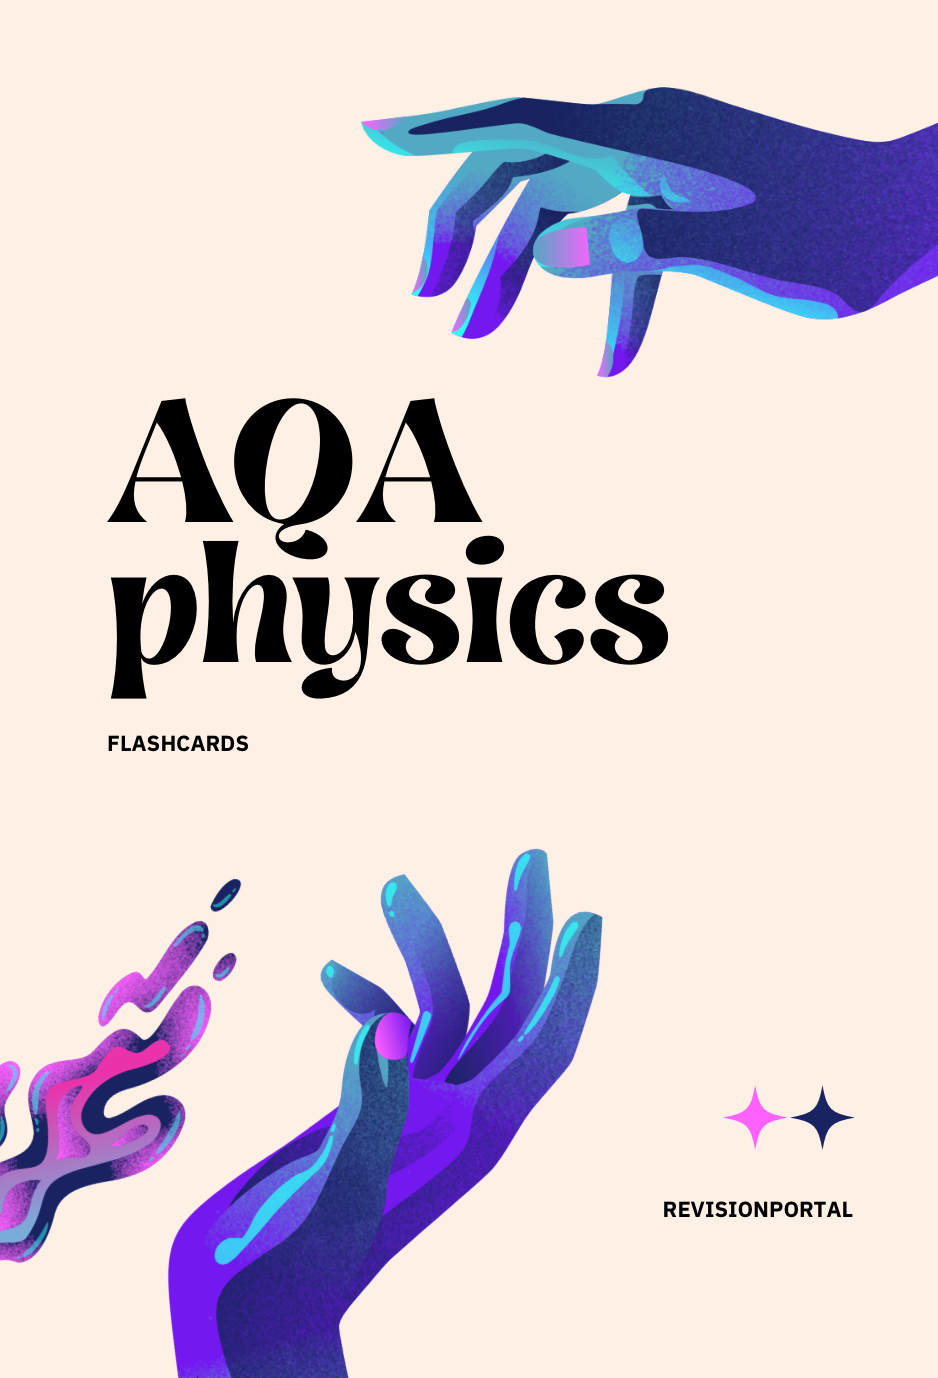 AQA physics flashcards